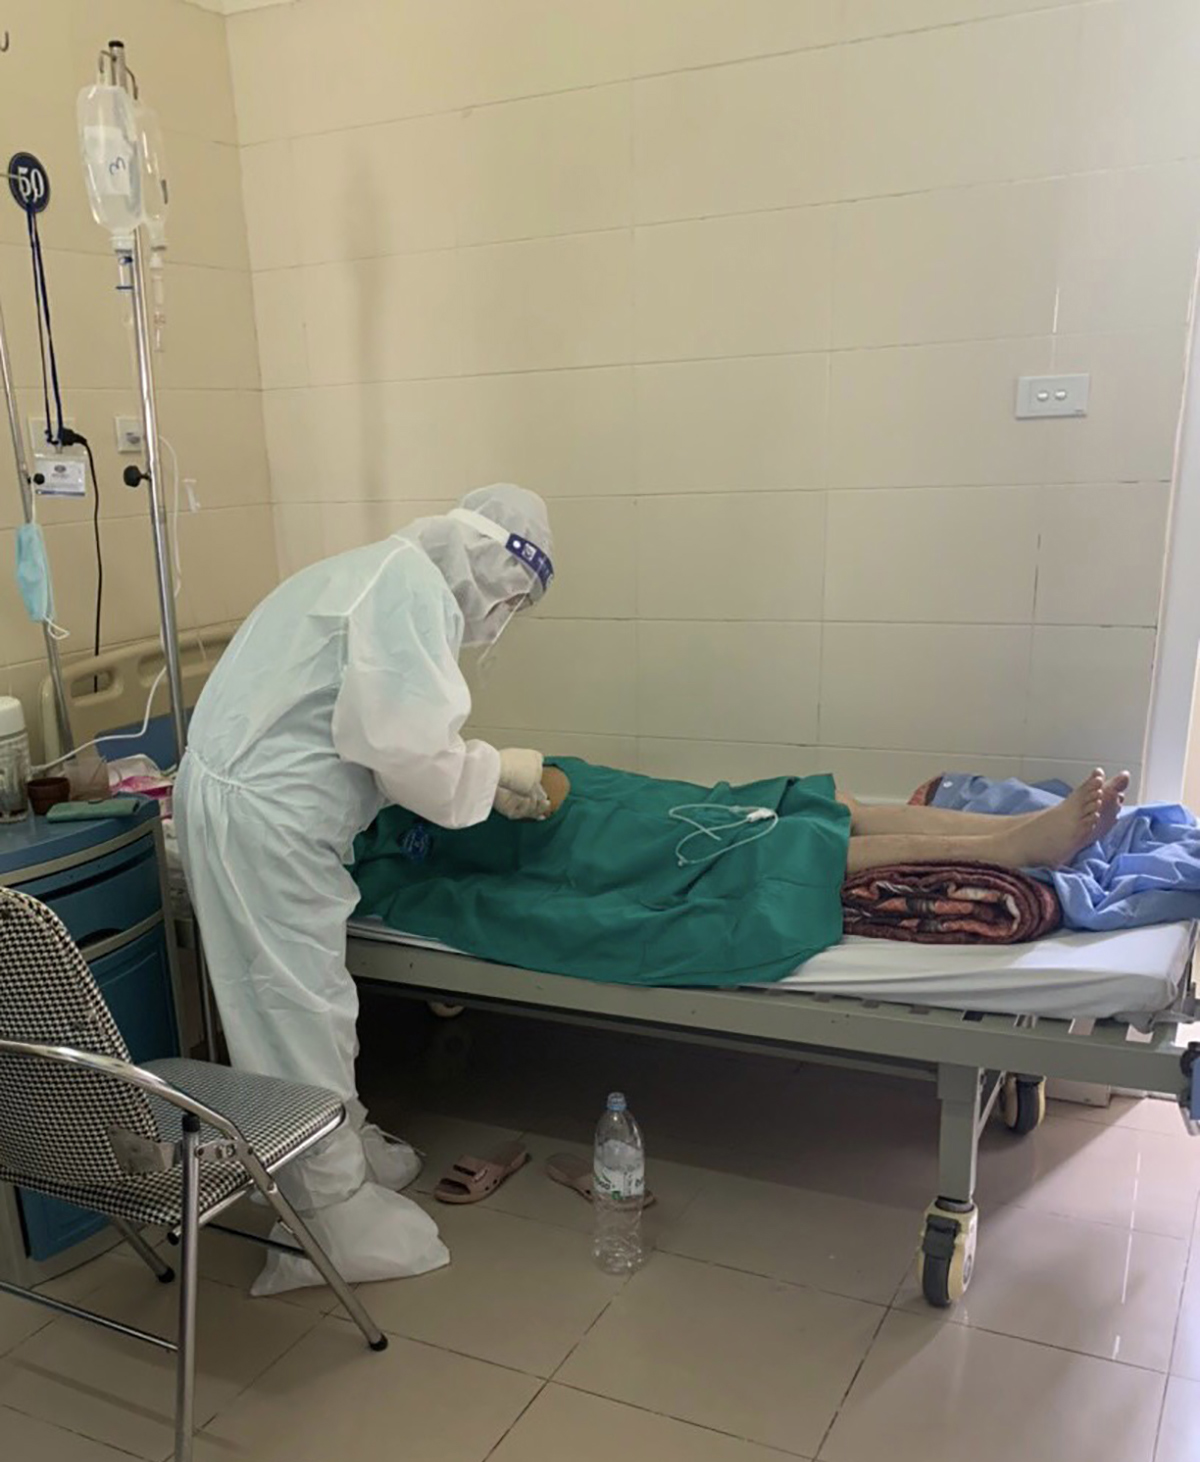 Trong bộ quần áo bảo hộ nóng bức, ngột ngạt, bác sĩ Hương Giang vẫn cần mần khám, chăm sóc bệnh nhân ung thu đang cách ly